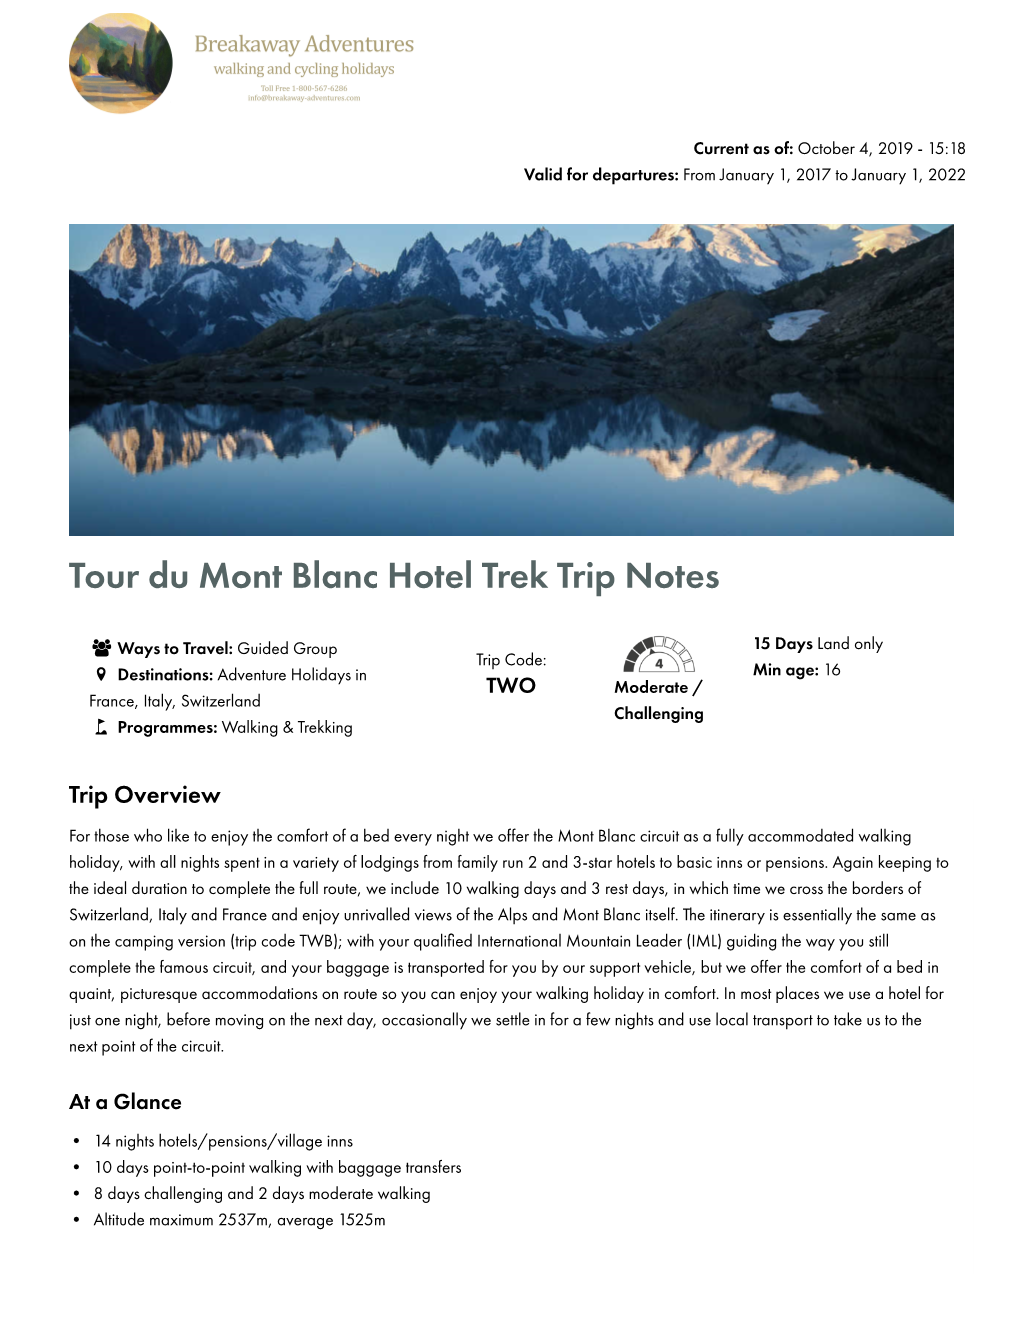 Tour Du Mont Blanc Hotel Trek Trip Notes